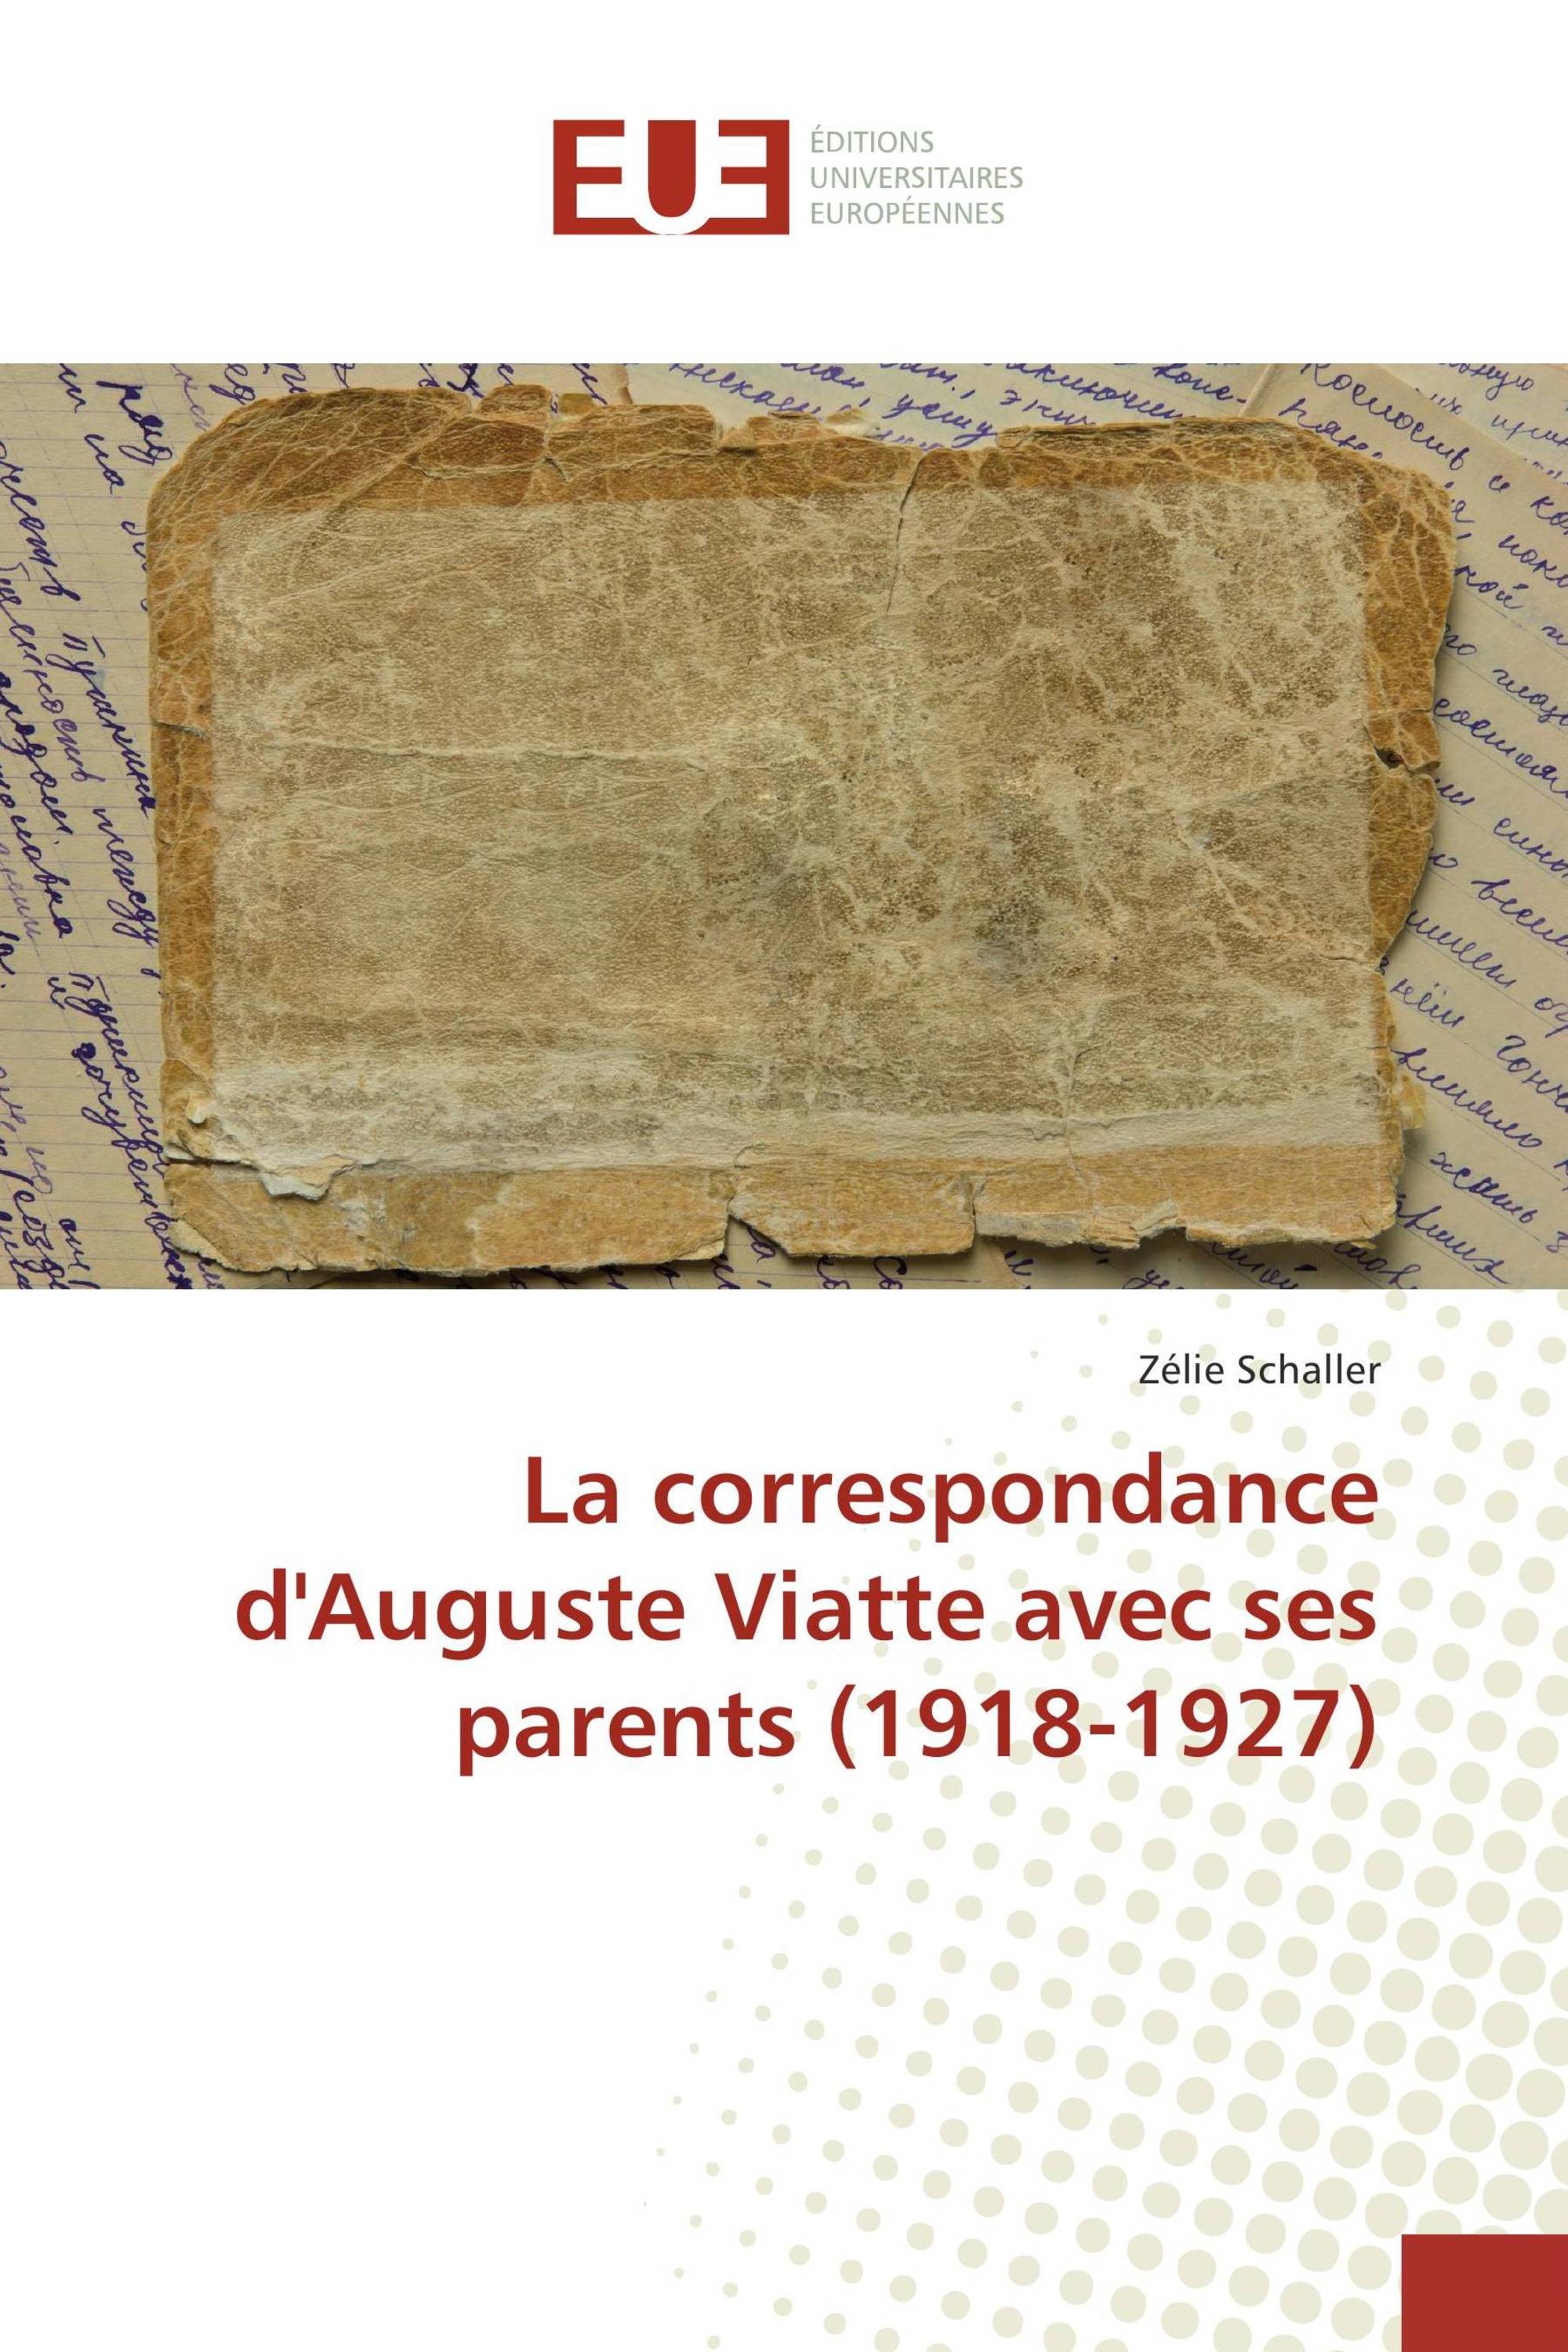 La correspondance d'Auguste Viatte avec ses parents (1918-1927)